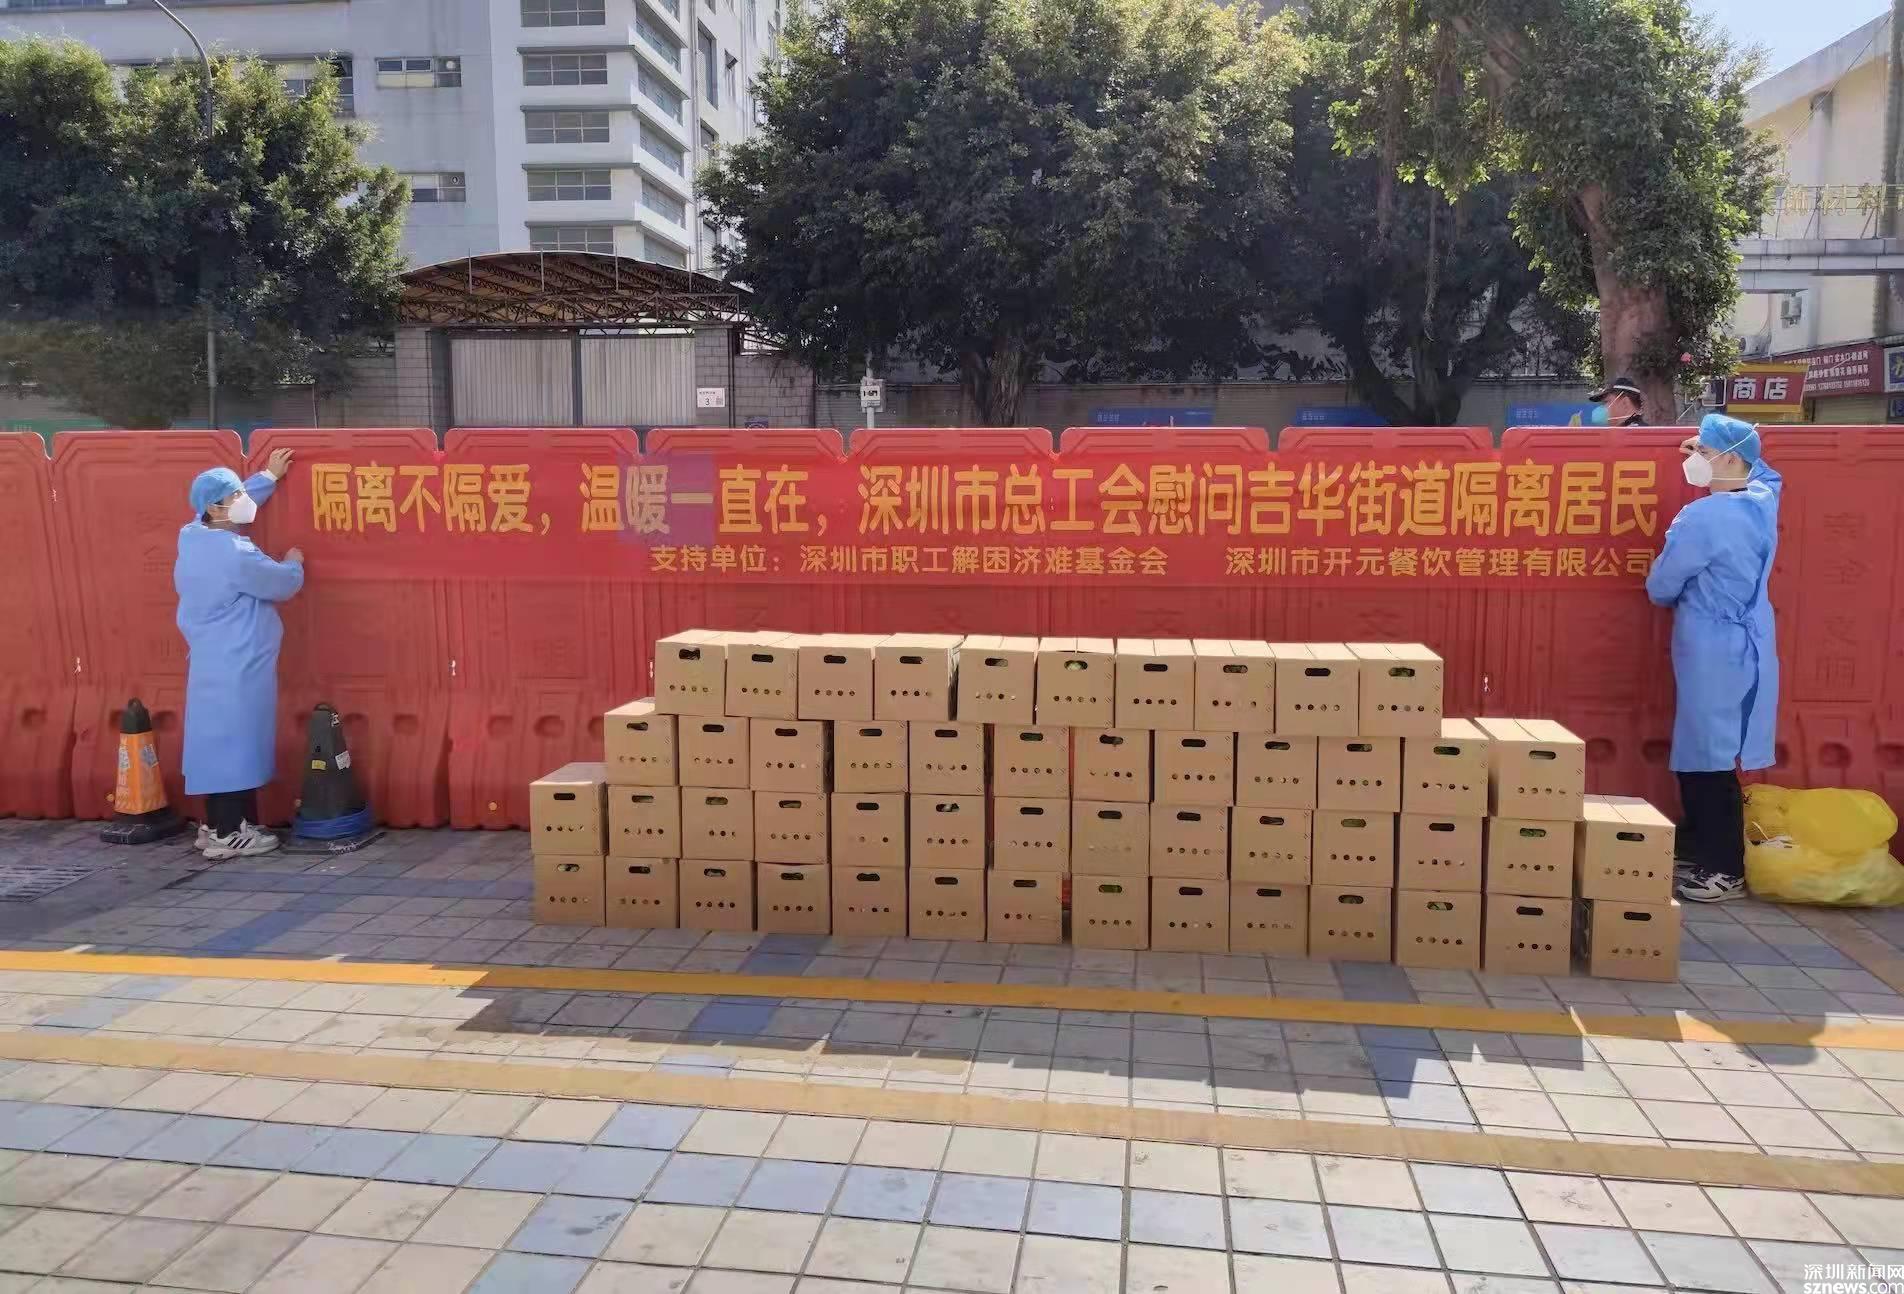 隔离不隔爱 温暖一直在 深圳市总工会慰问隔离居民